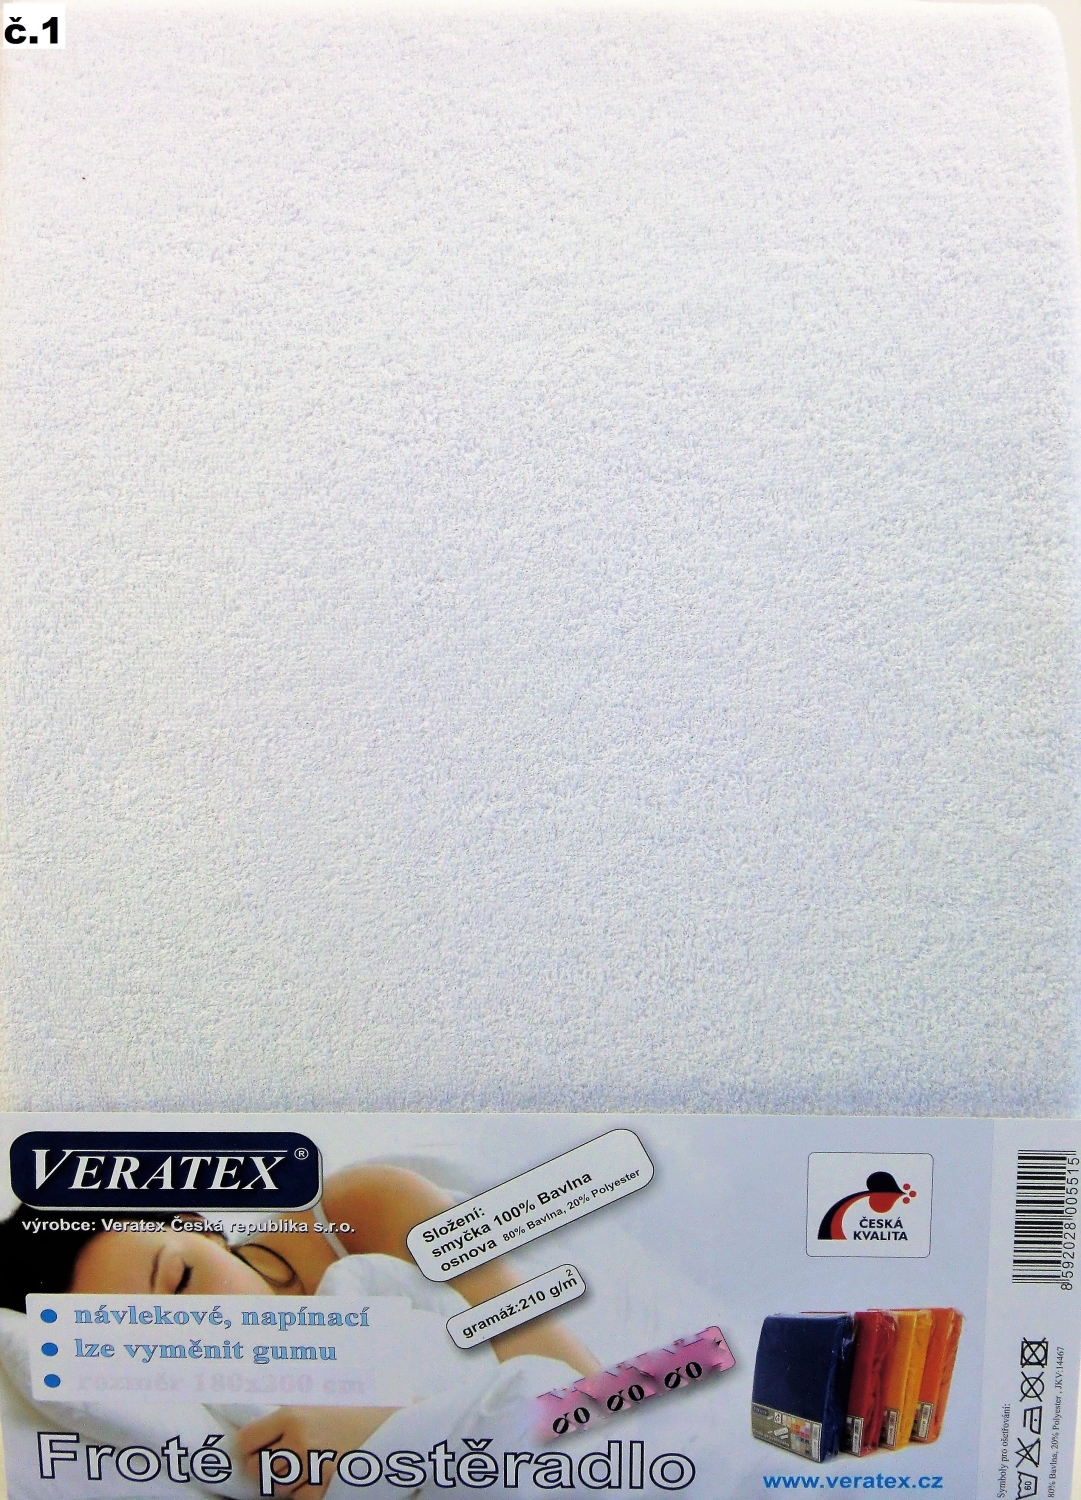 Veratex Froté prostěradlo jednolůžko 90x200/40cm (č. 1-bílé)